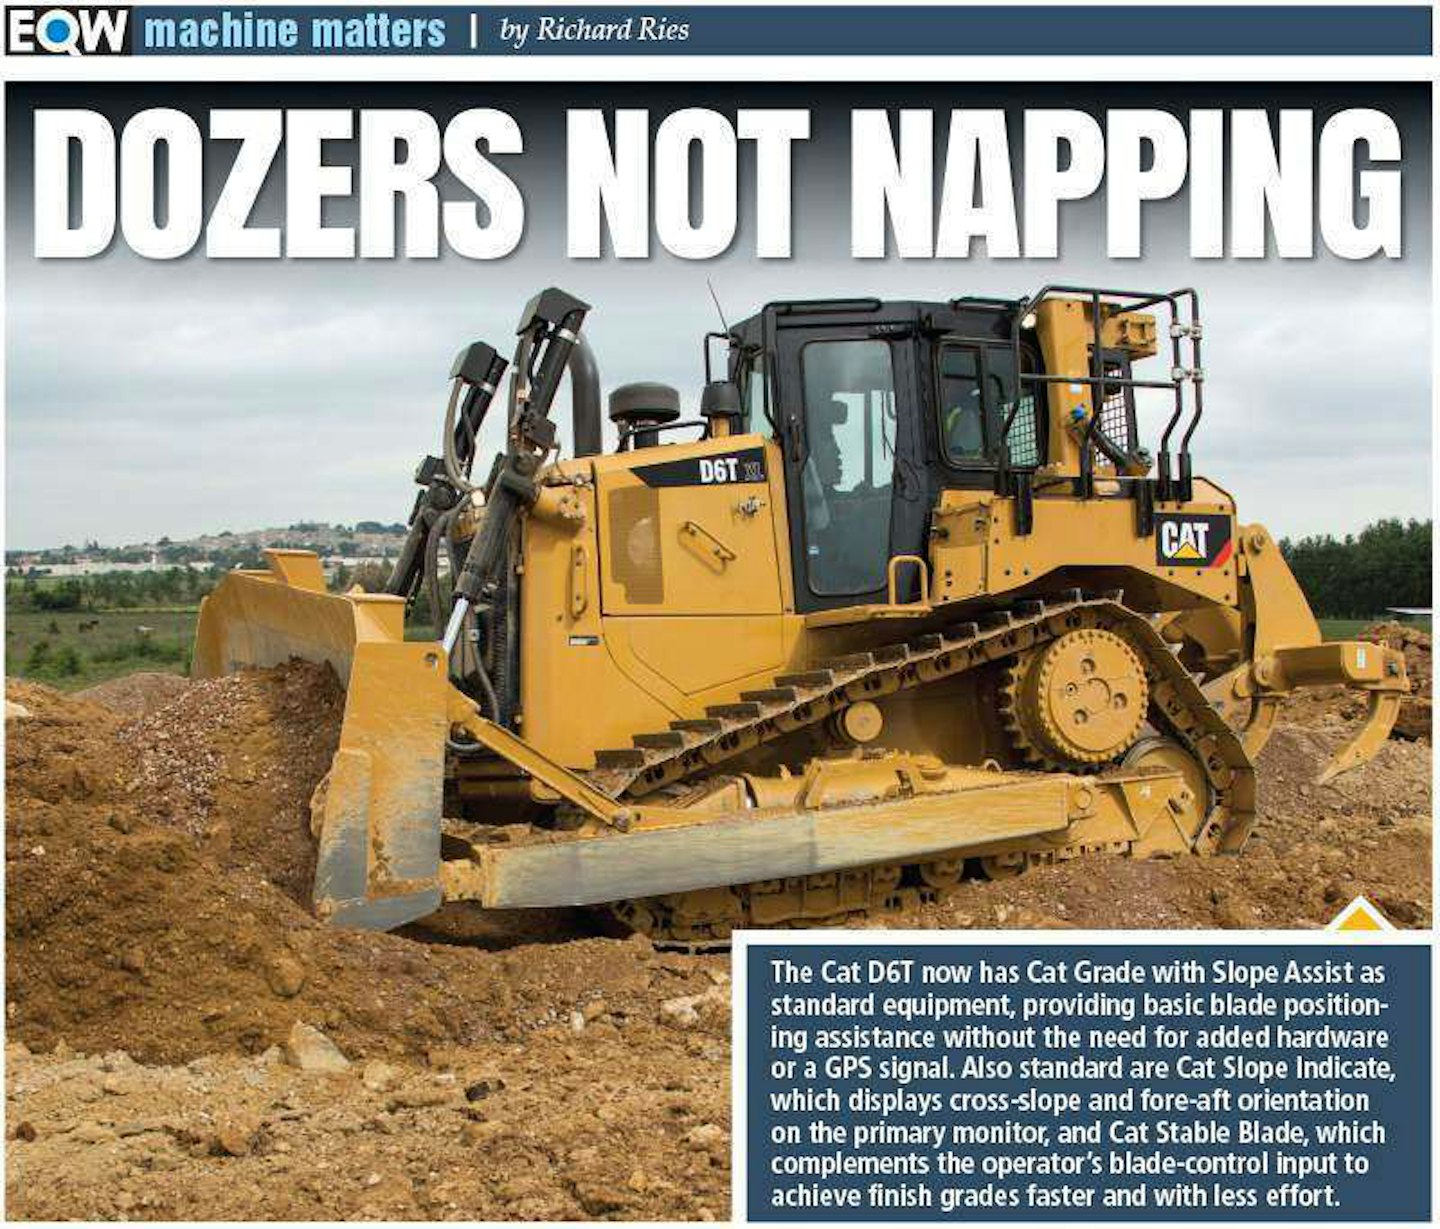 equipment world machine matters dozers not napping